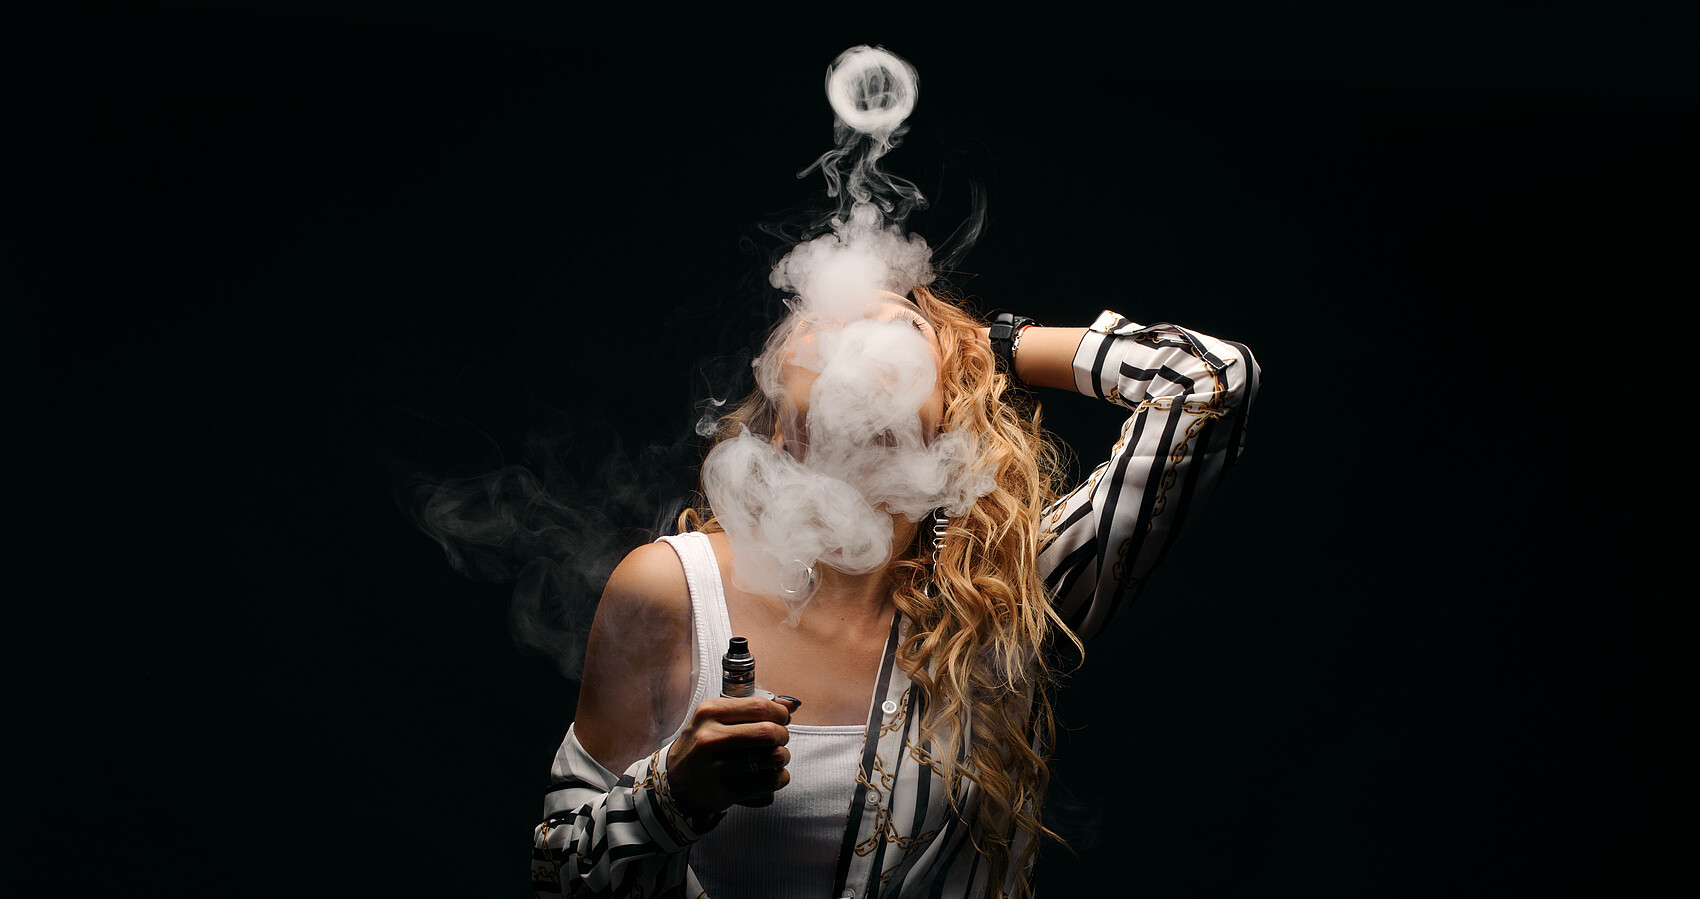 Das Foto zeigt eine rothaarige Frau mit einer E-Zigarette und viel Rauch vor dem Gesicht vor einem dunklen Hintergrund in einer Nahfaufnahme.